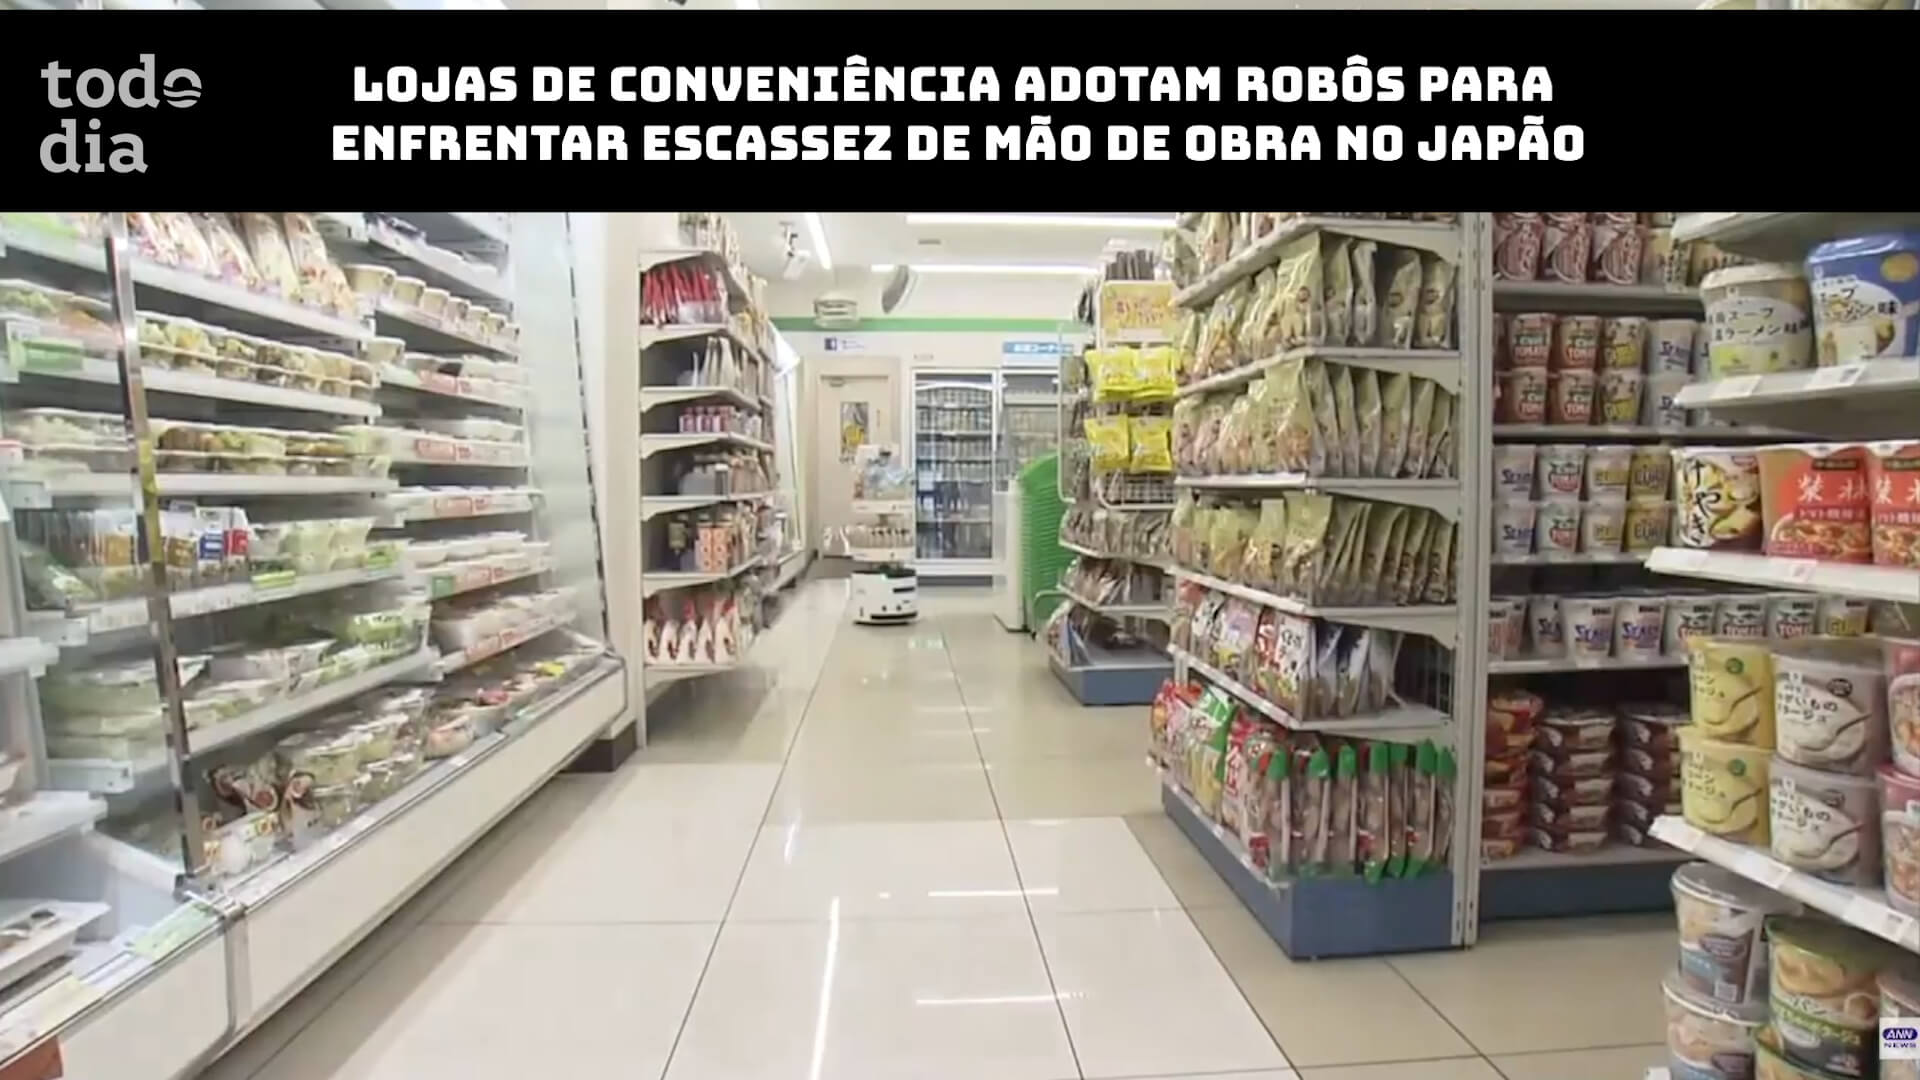 Lojas de conveniência adotam robôs para enfrentar escassez de mão de obra no Japão